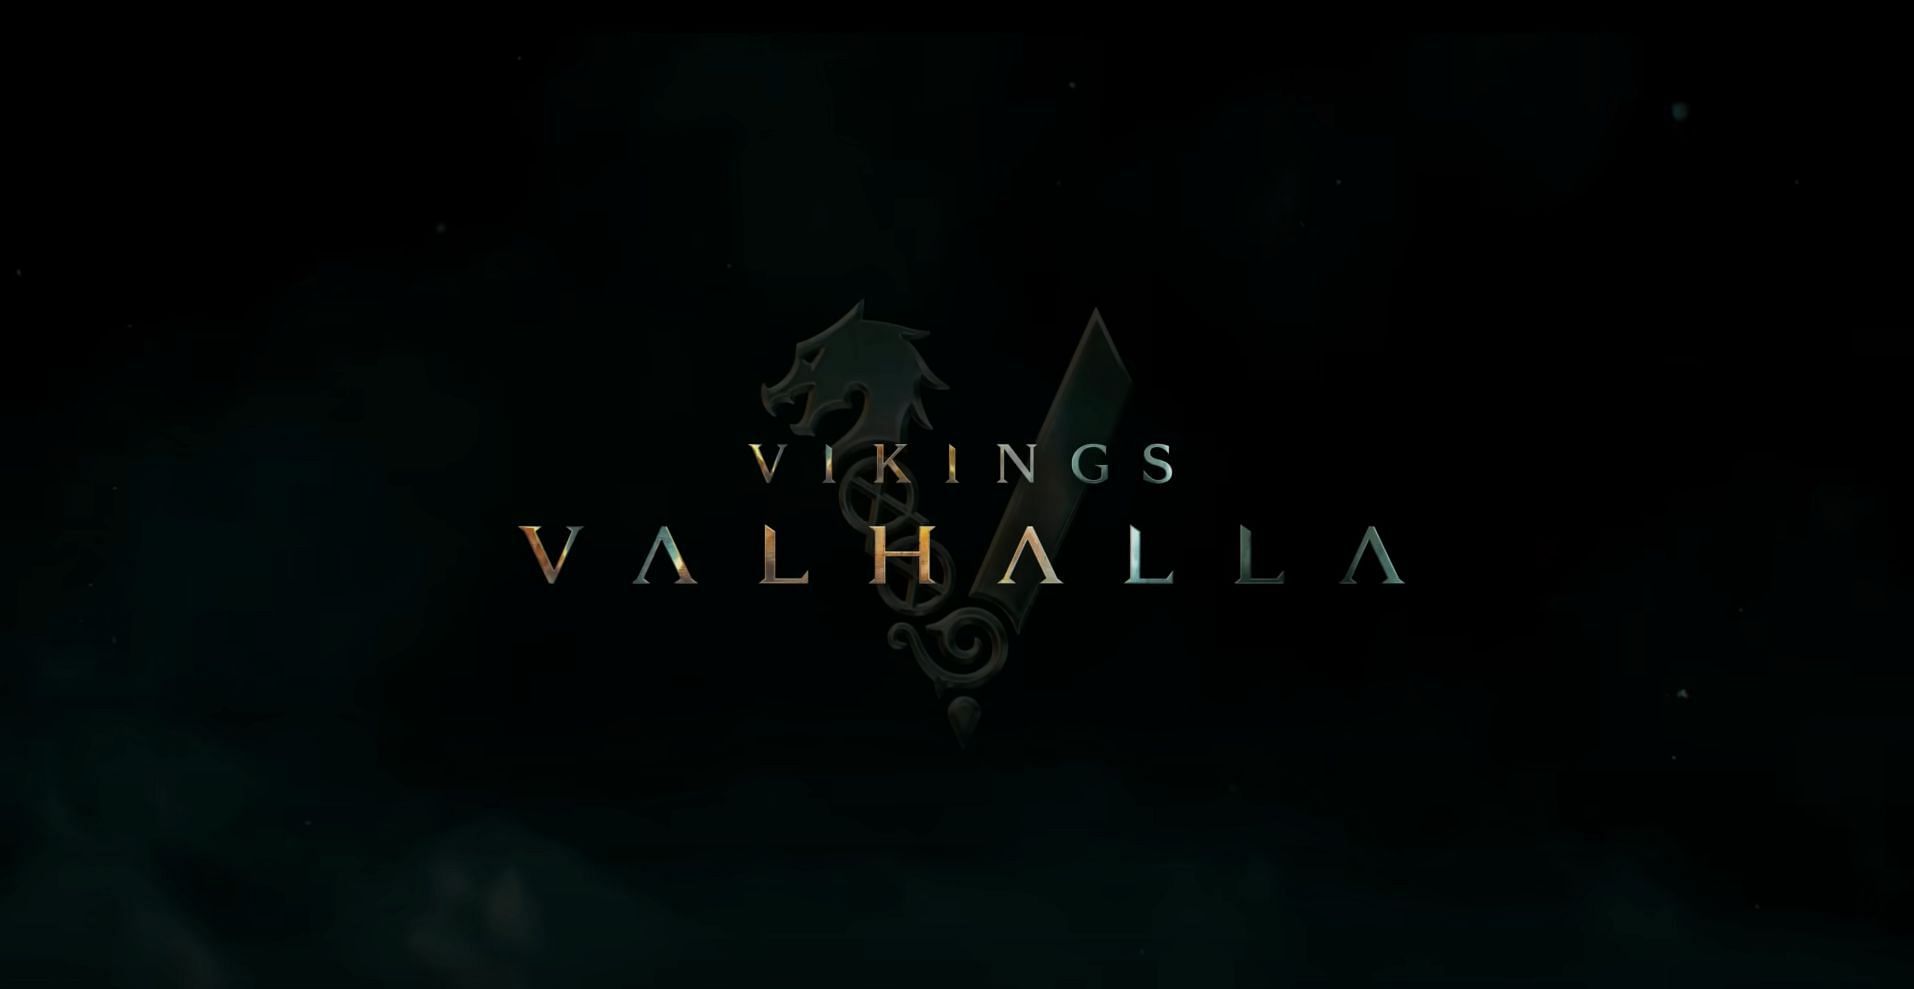 Vikings: Valhalla (Image via Netflix)